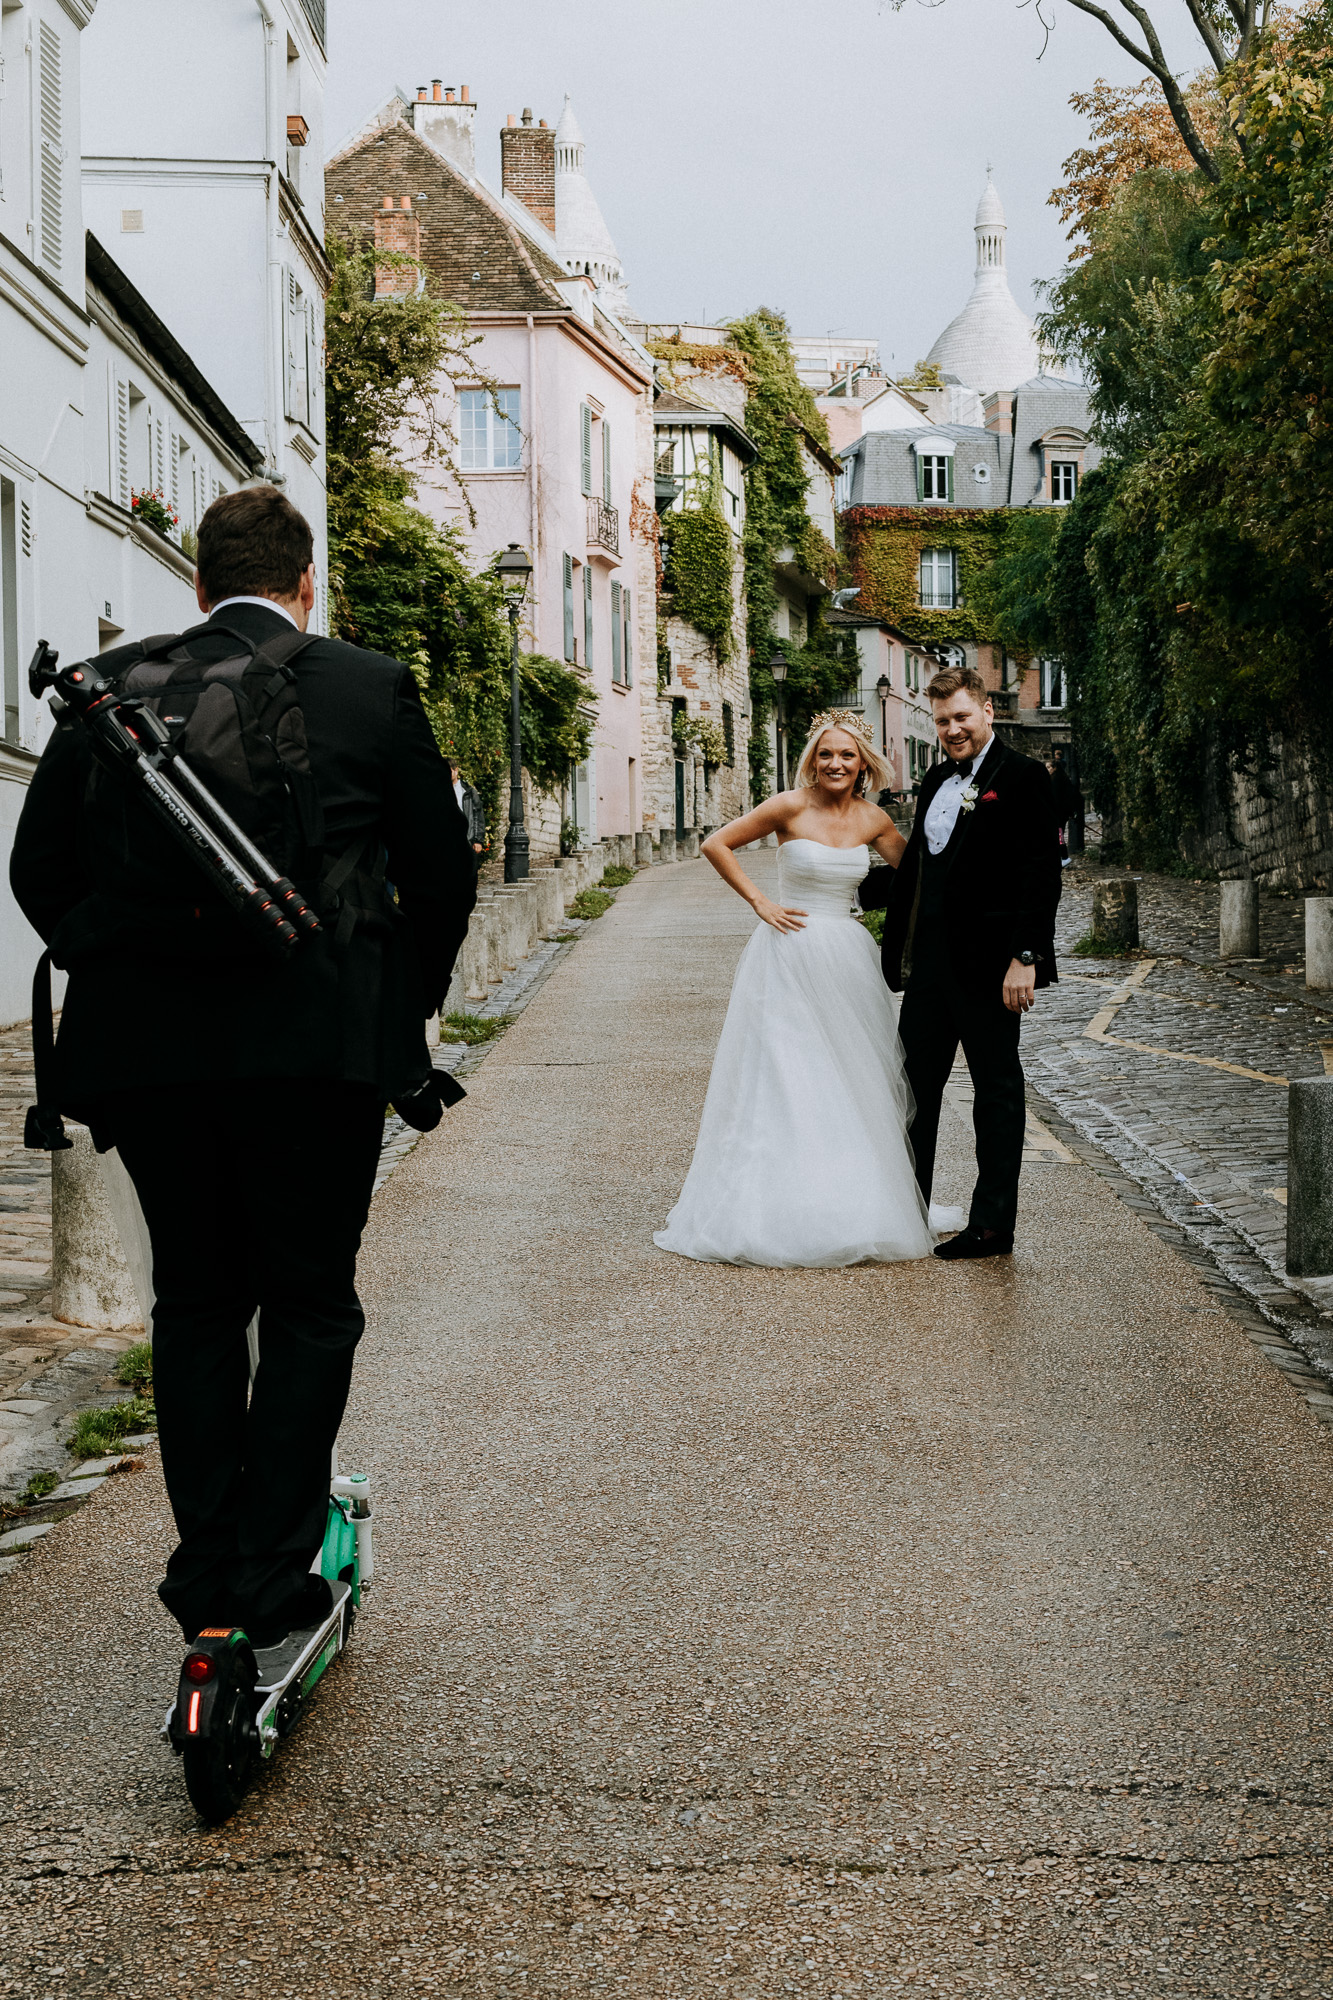 le témoin du marié prend le rôle d'assistant photographe et est ravit de trouver une trottinette pour accompagner la séance photo des mariés